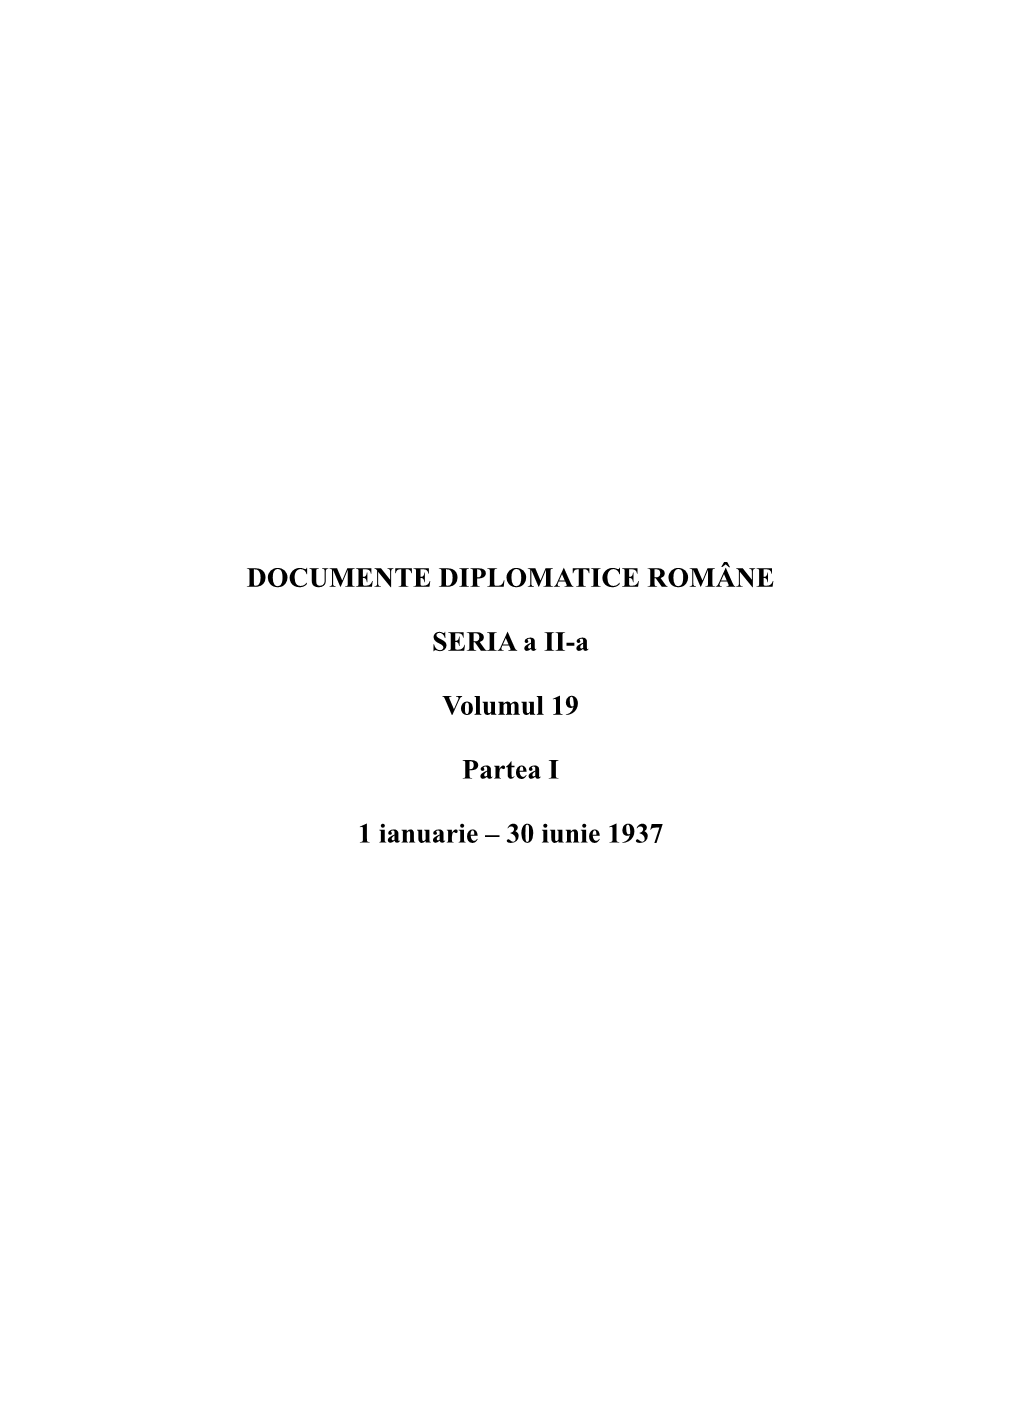 Documente Diplomatice Române, Seria a II-A, Volumul 19, 1937